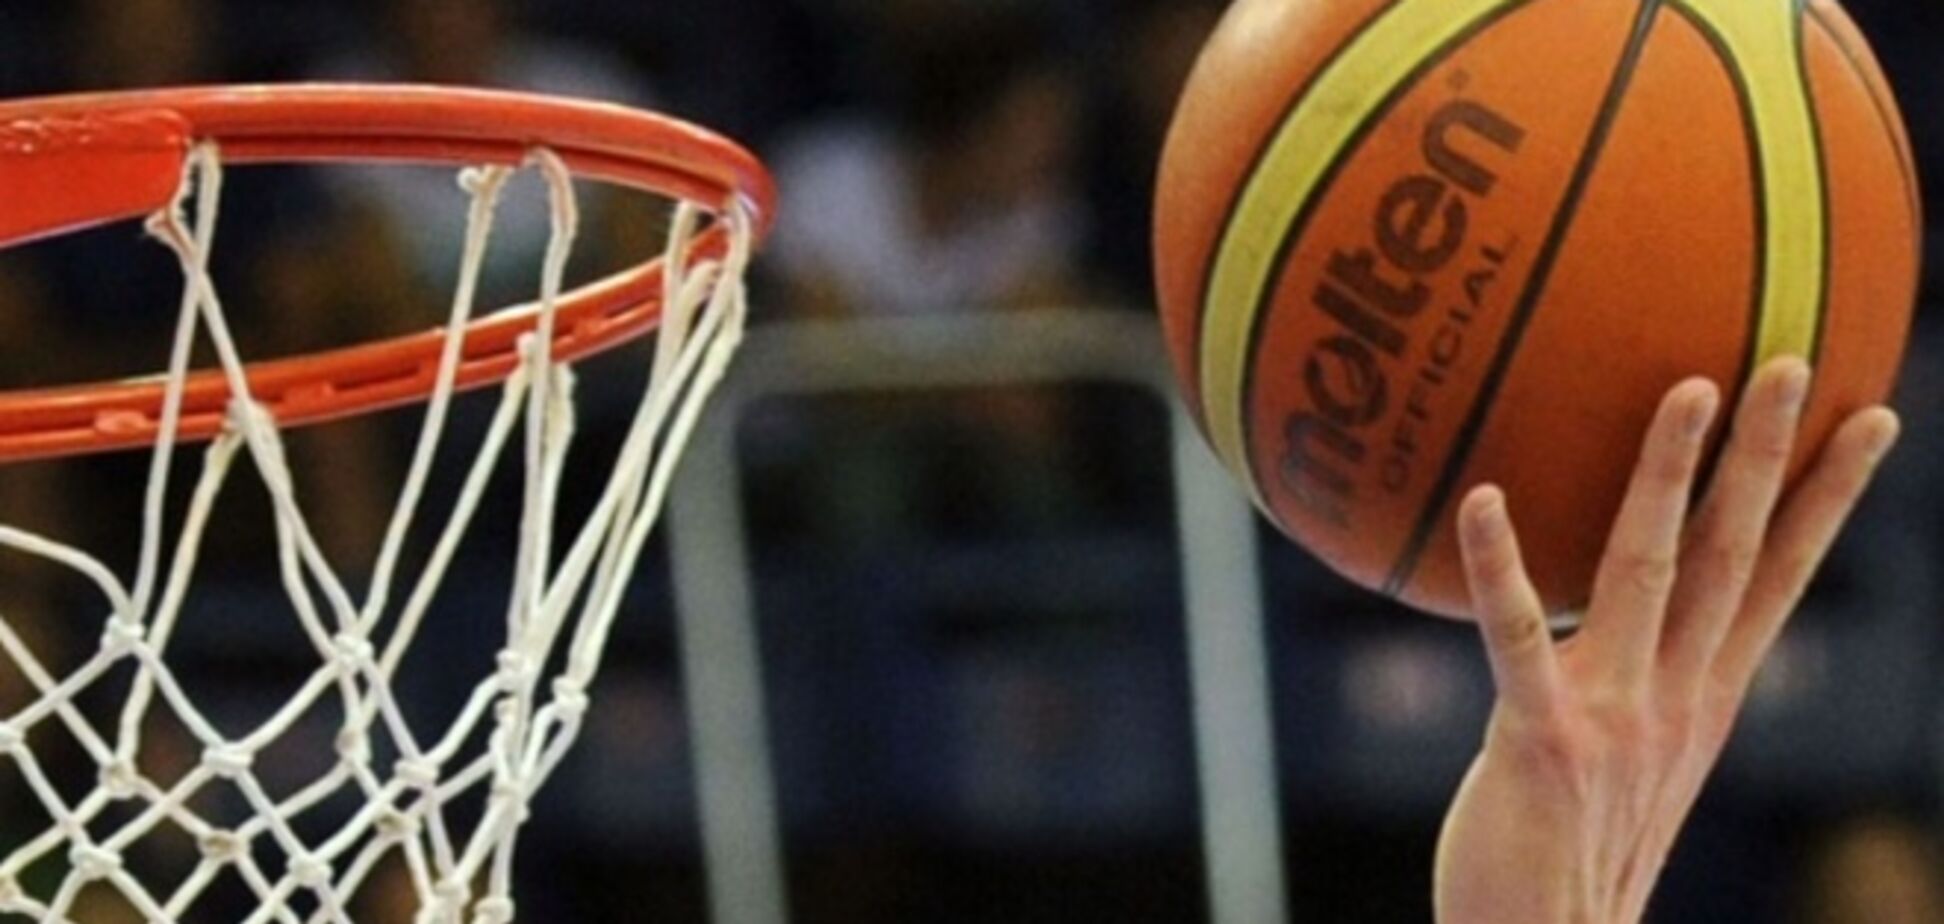 Сепаратисты объявили о старте собственного баскетбольного чемпионата